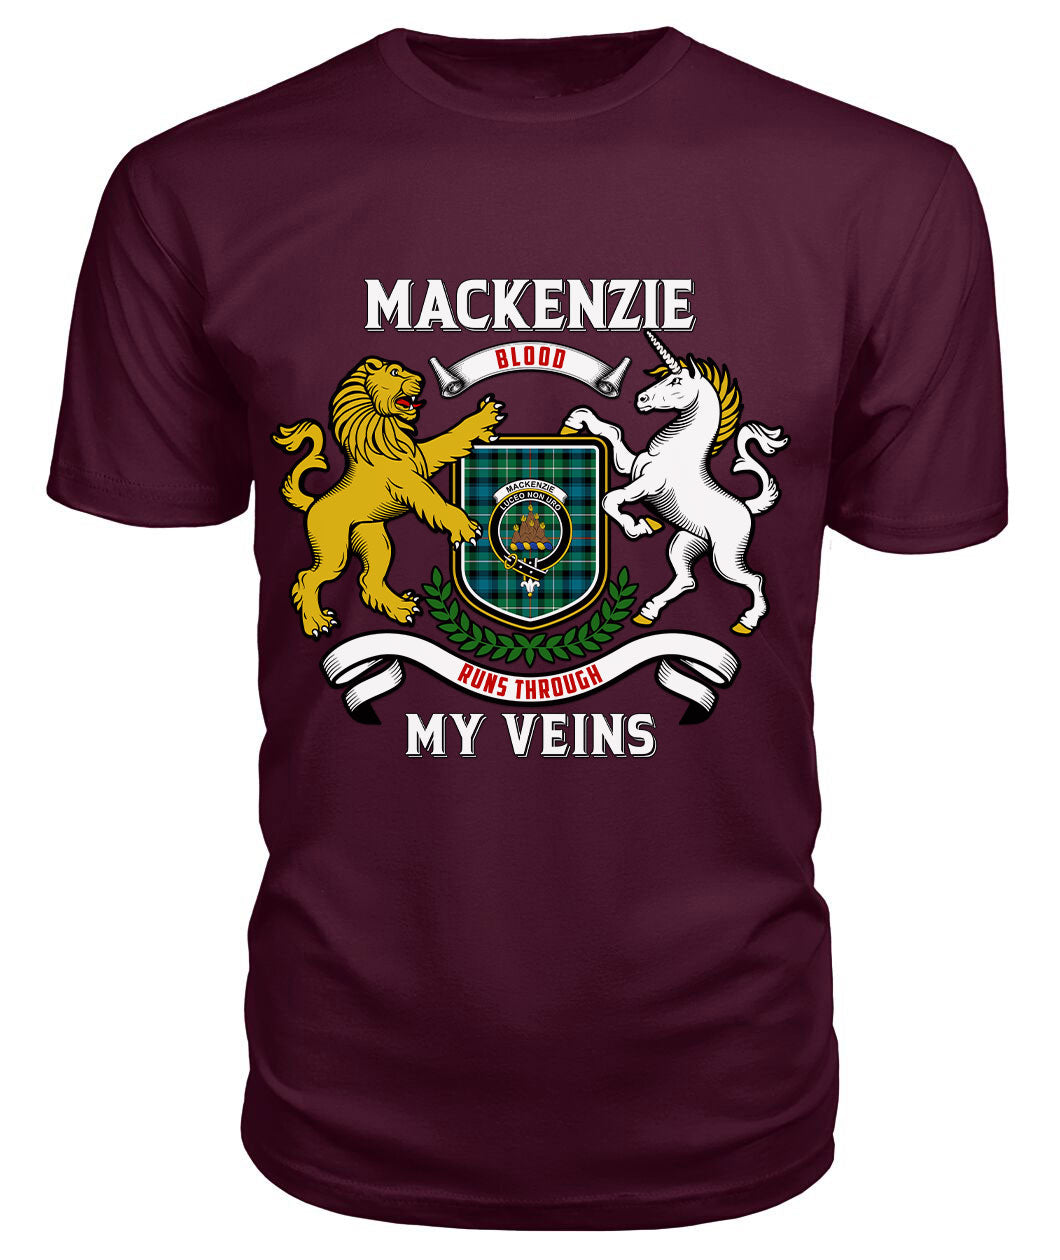 MacKenzie Ancient Tartan Crest 2D T-shirt - Blood Runs Through My Veins Style